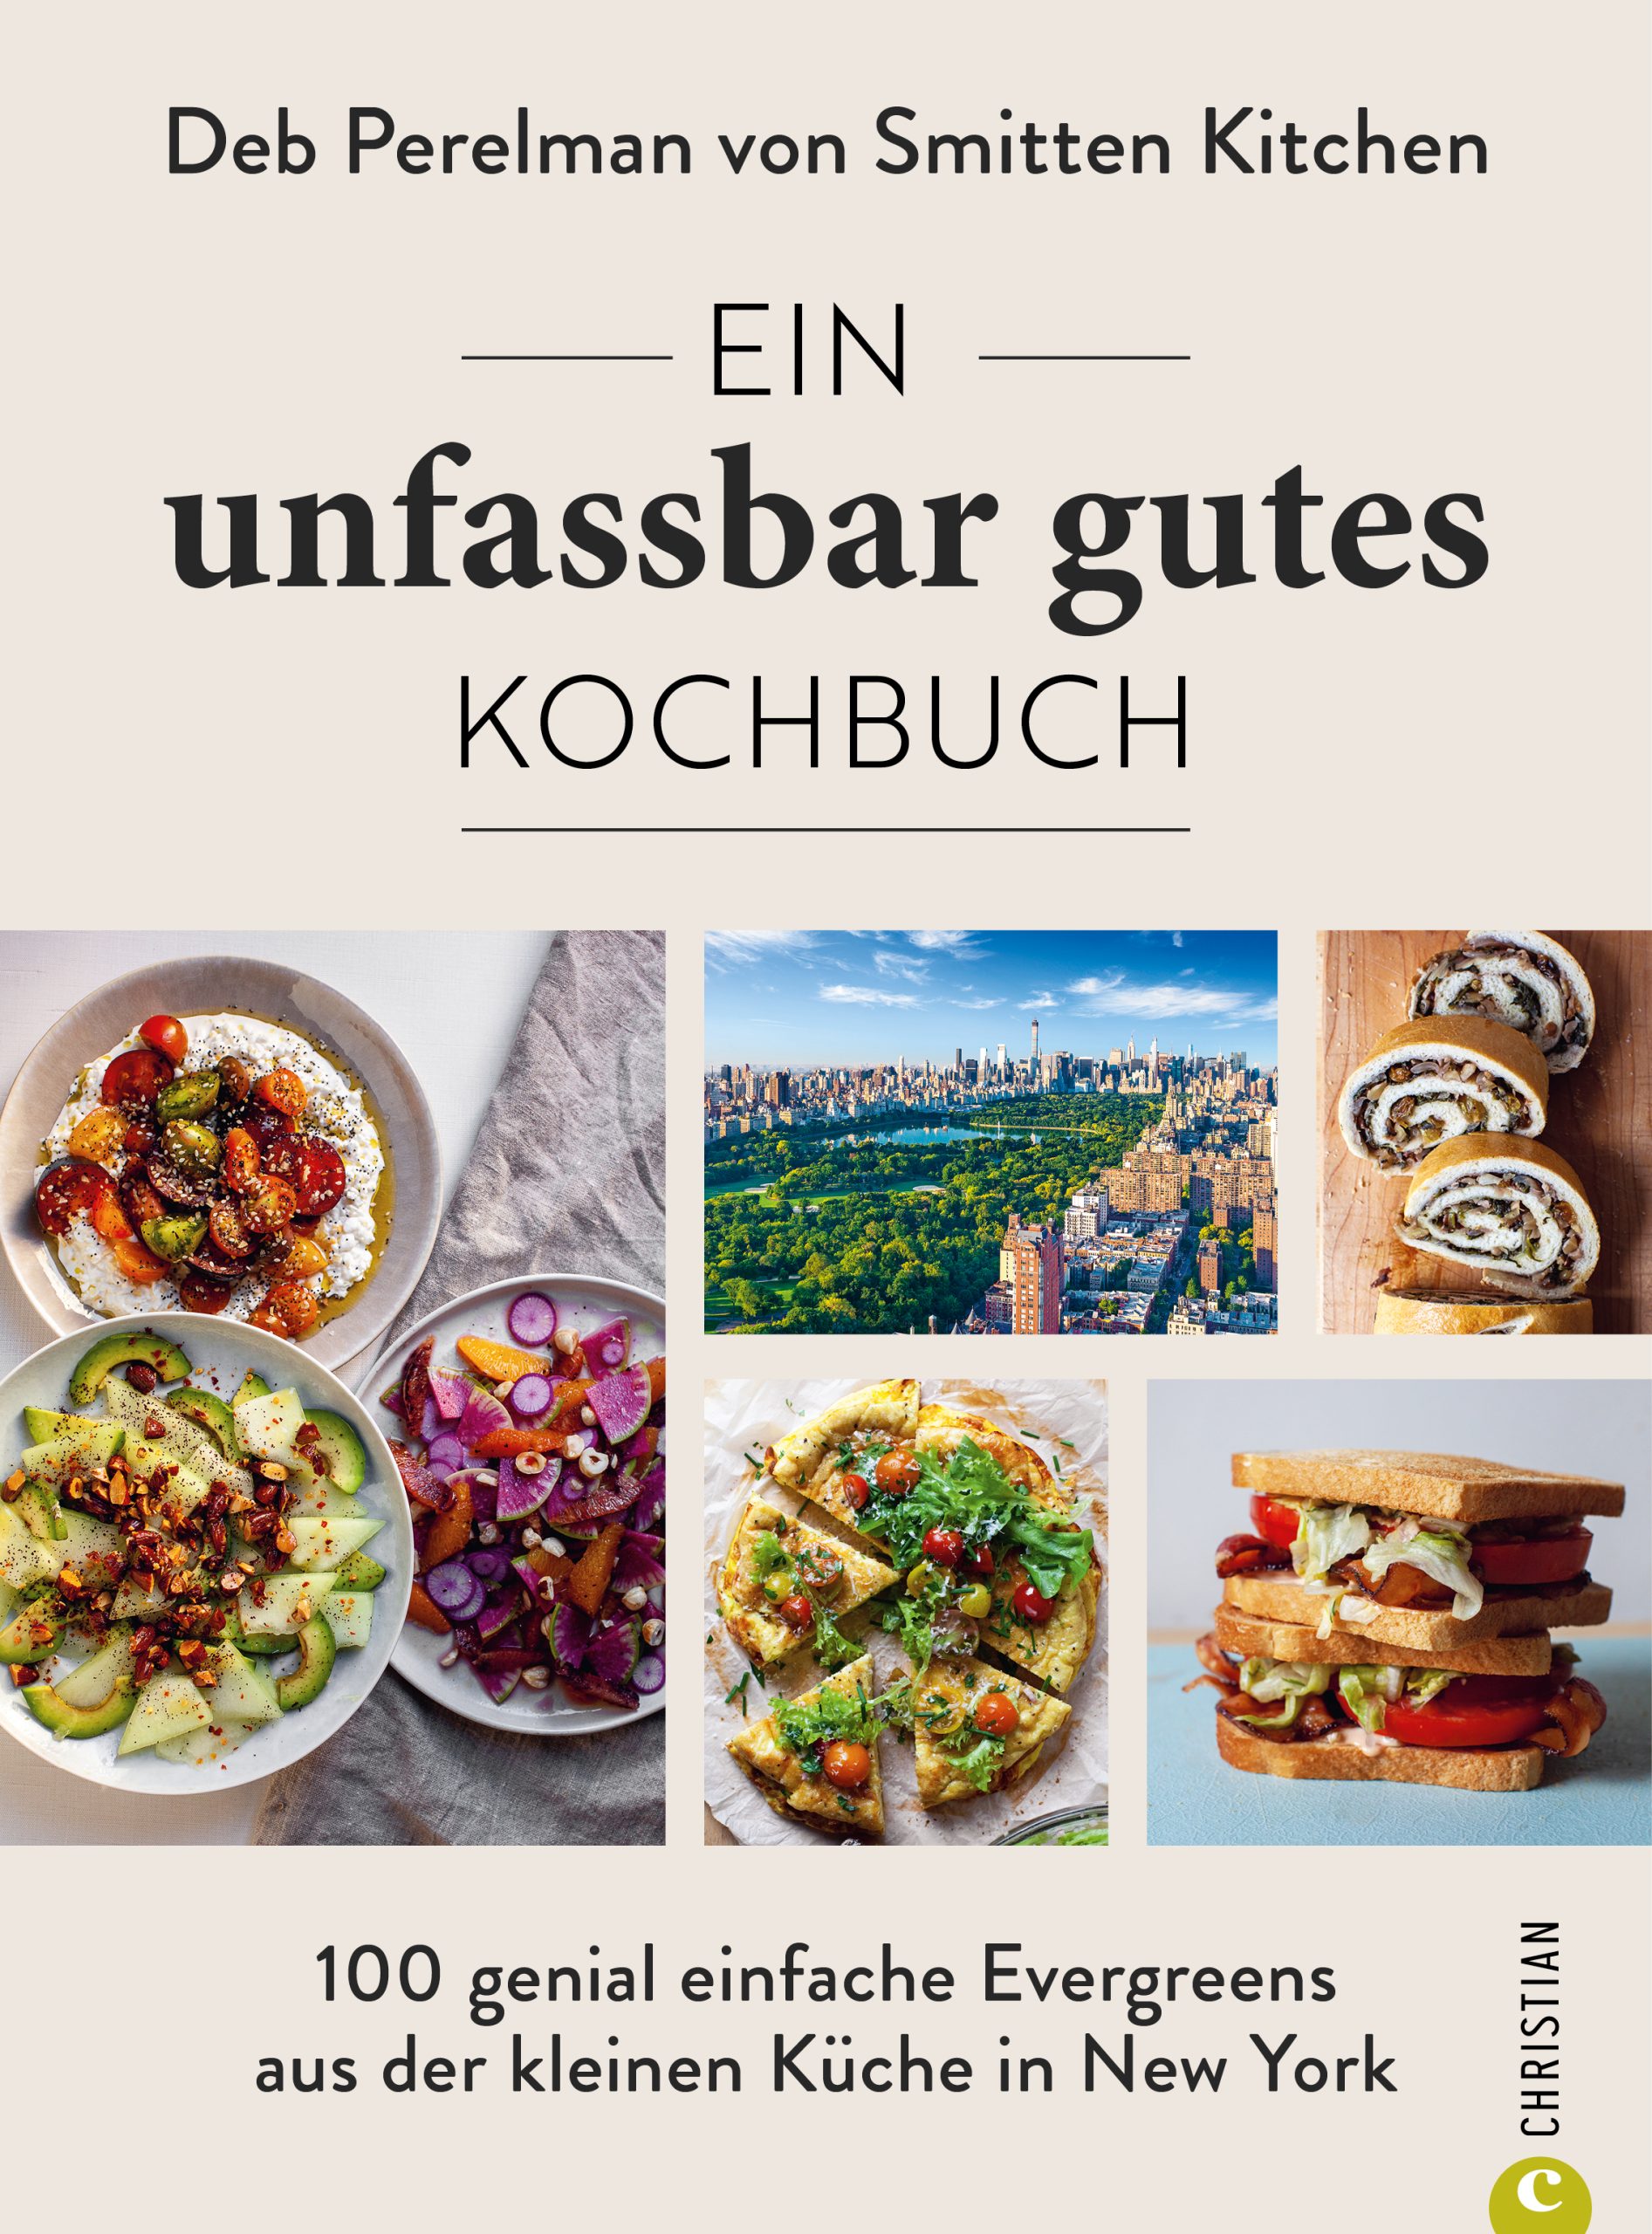 Lasagne Aus Ein Unfassbar Gutes Kochbuch C Christian Verlag Deb Perelman Scaled